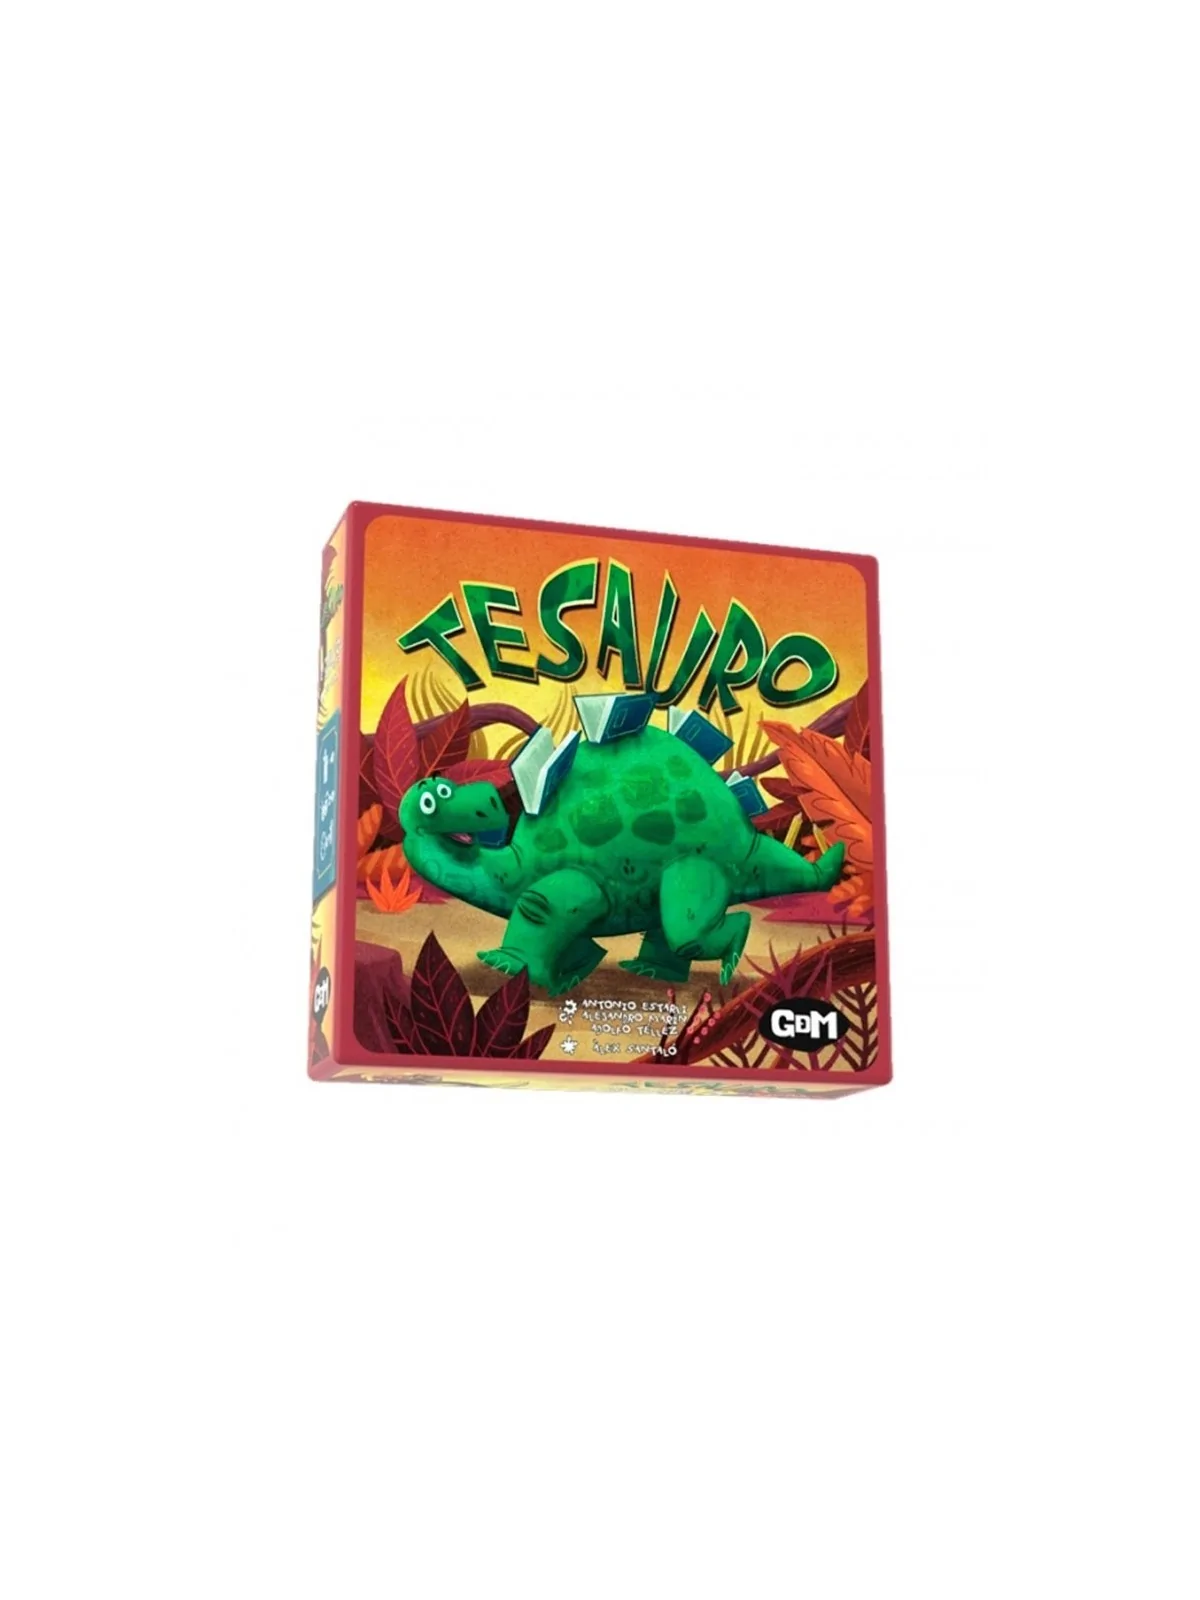 Comprar Tesauro barato al mejor precio 18,00 € de GDM Games